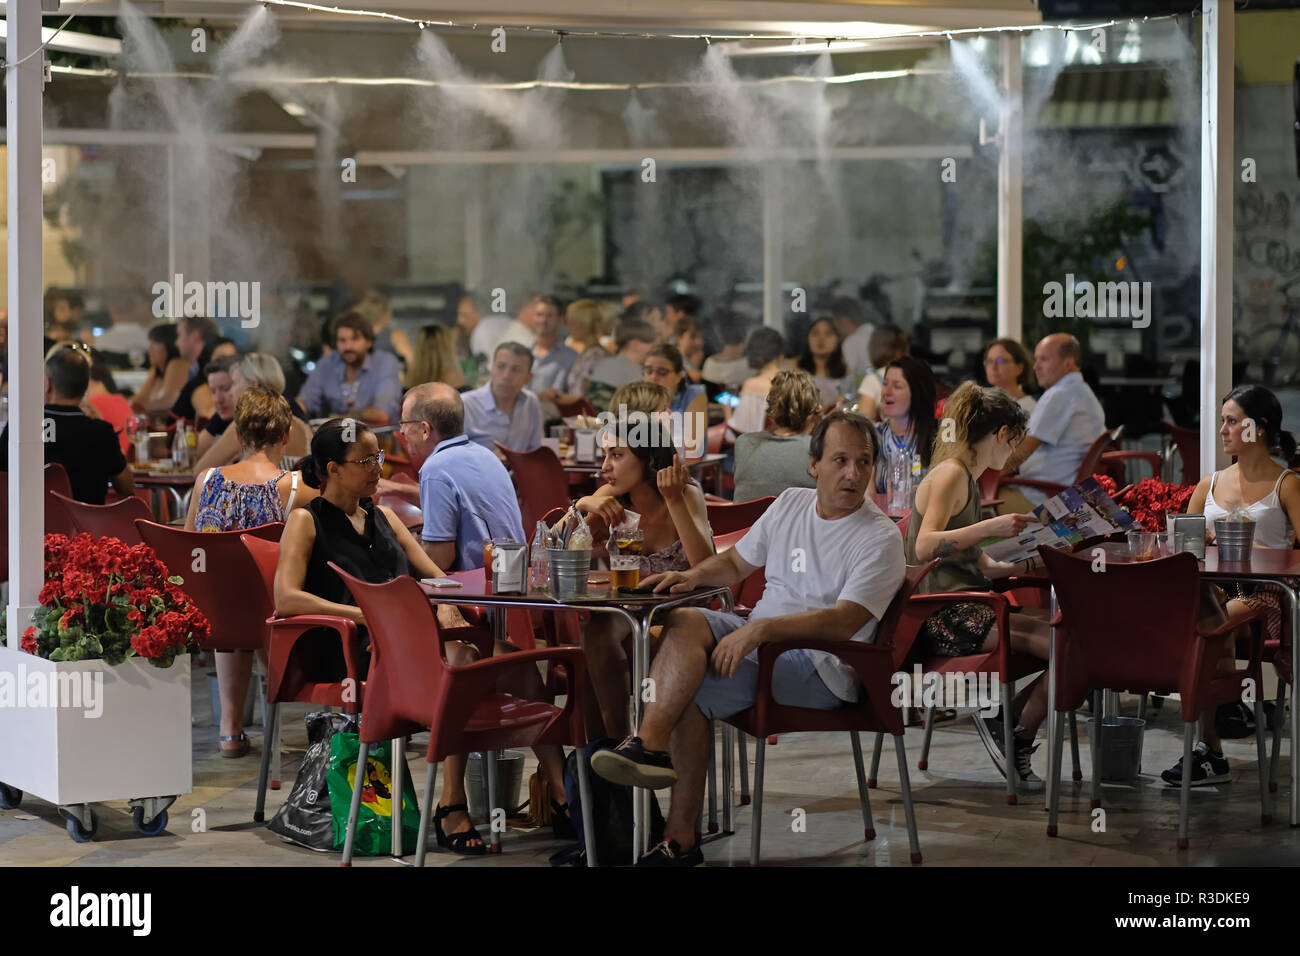 Menschen sitzen in einer spanischen Bar, Restaurant mit Nebel gesprüht wird, um sie zu kühlen. Sevilla. Stockfoto